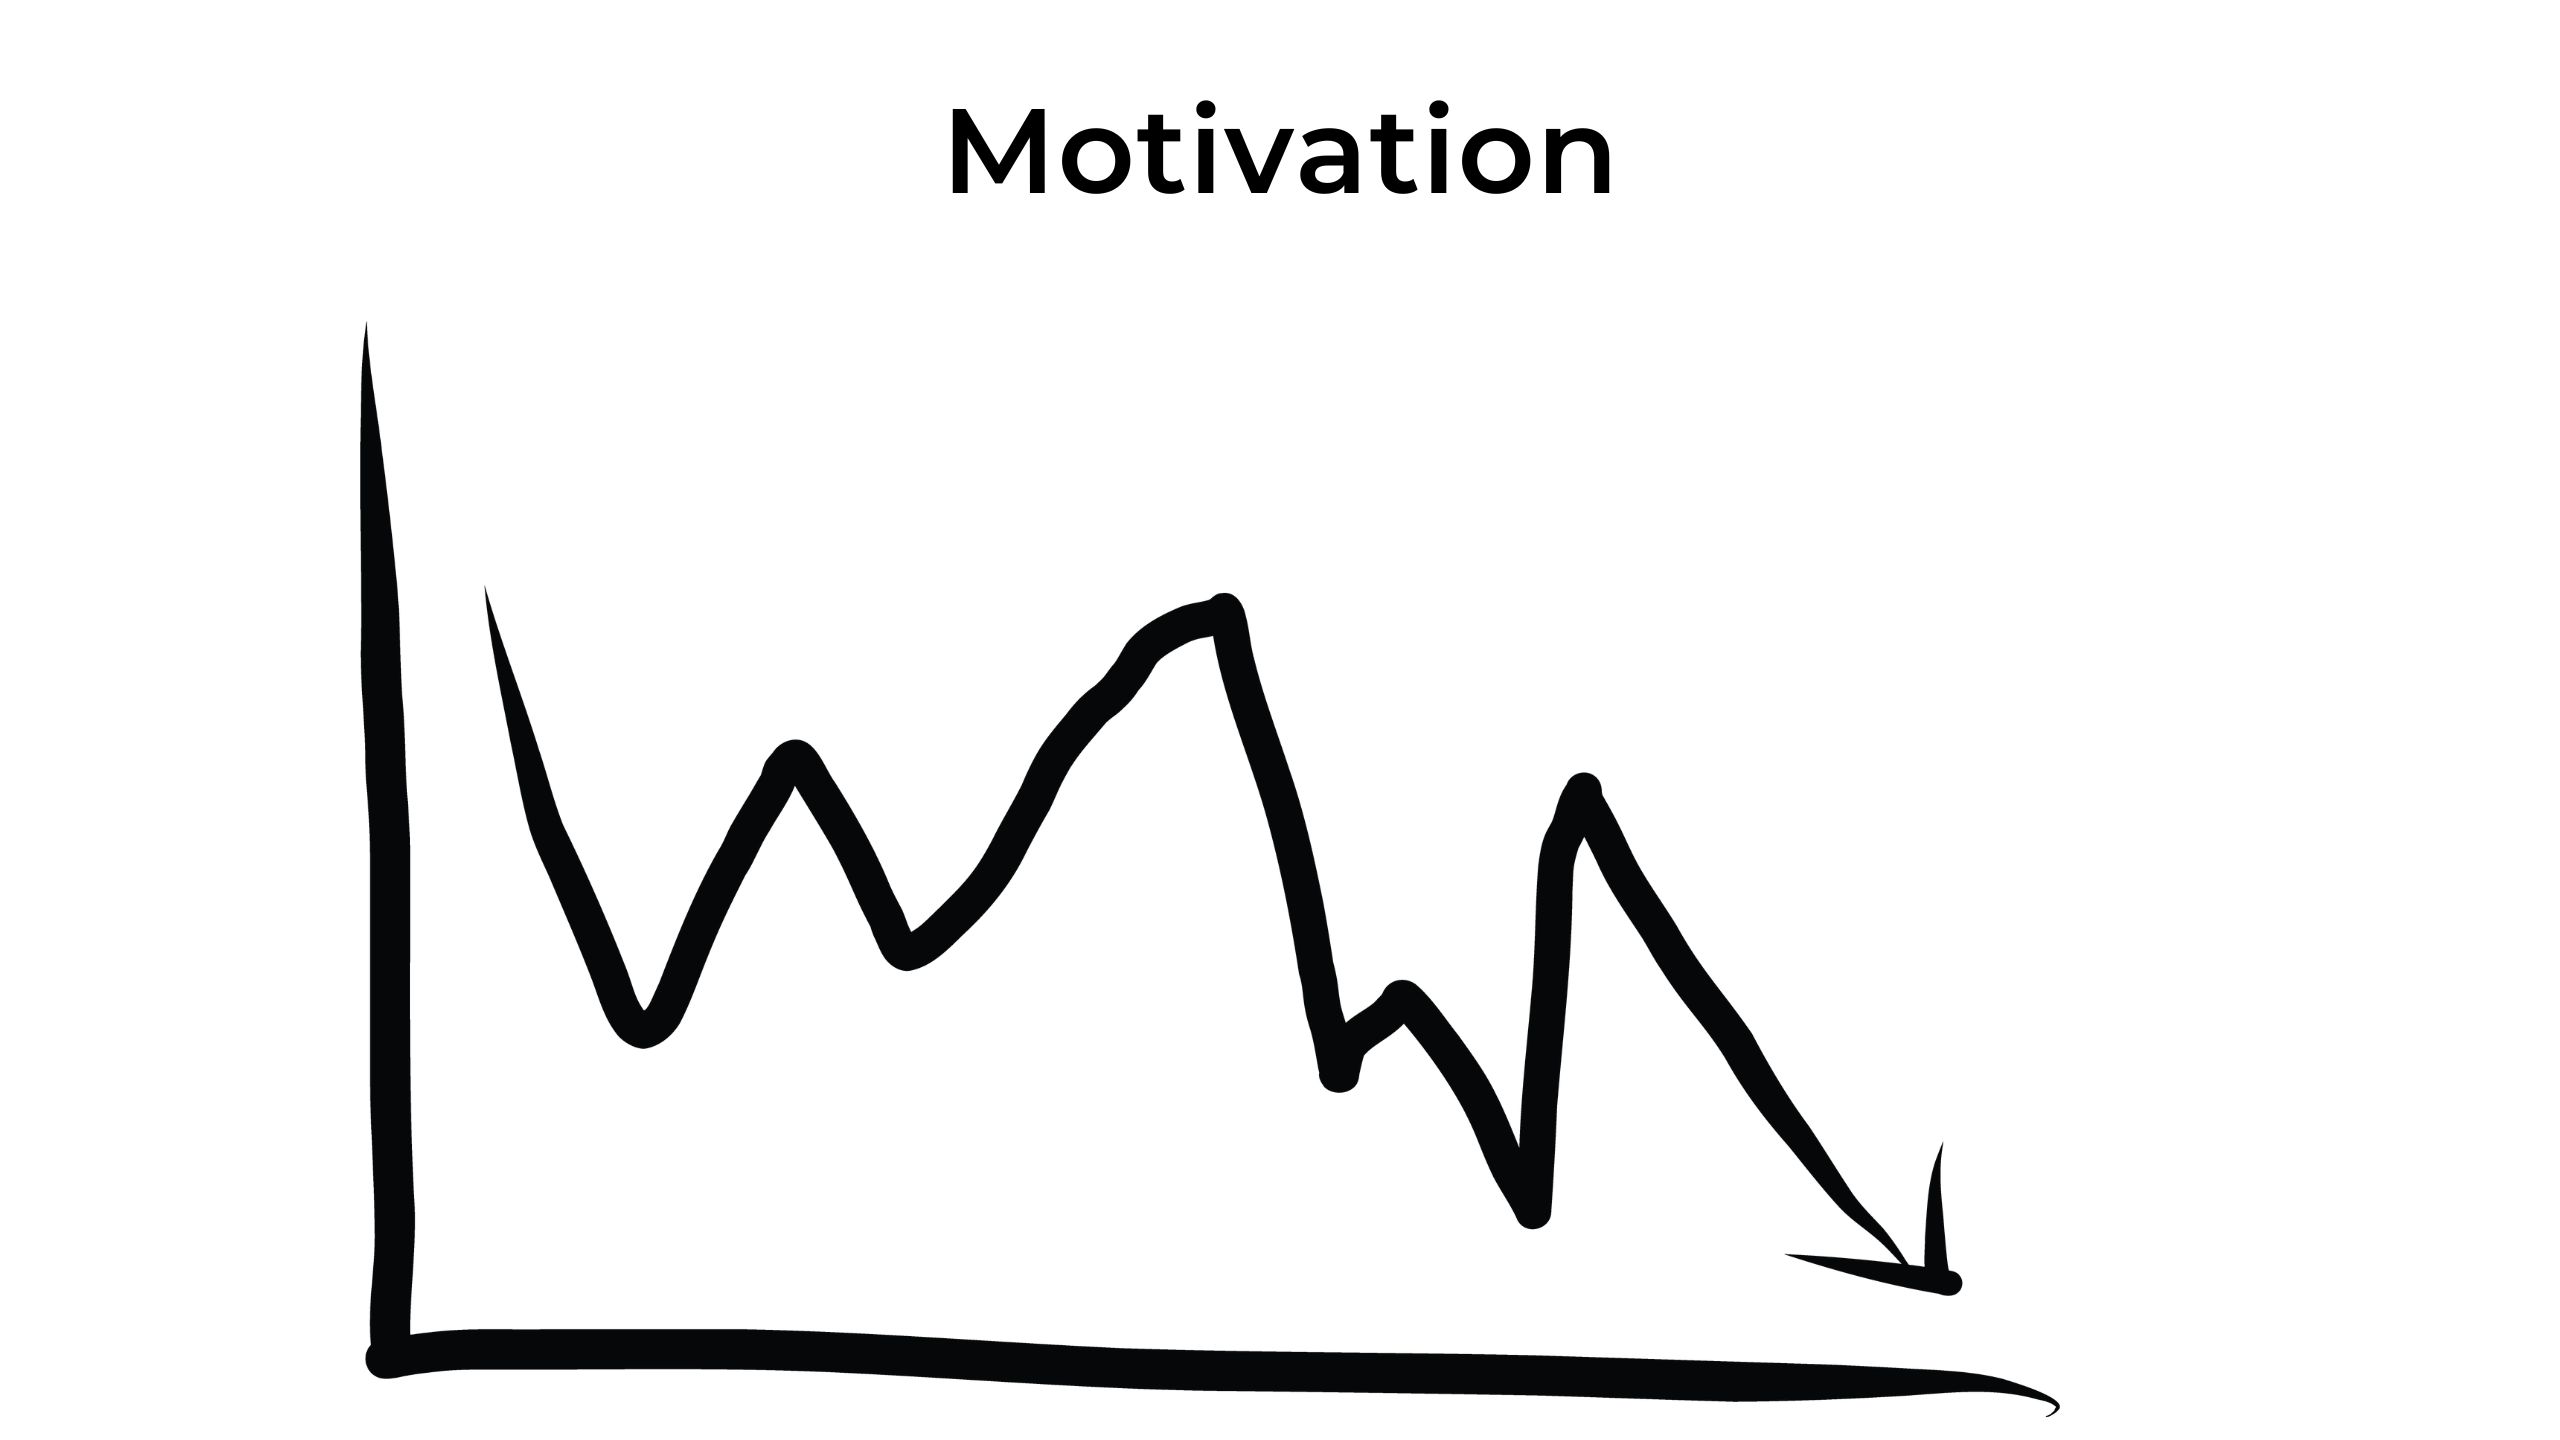 graf med varierende motivation